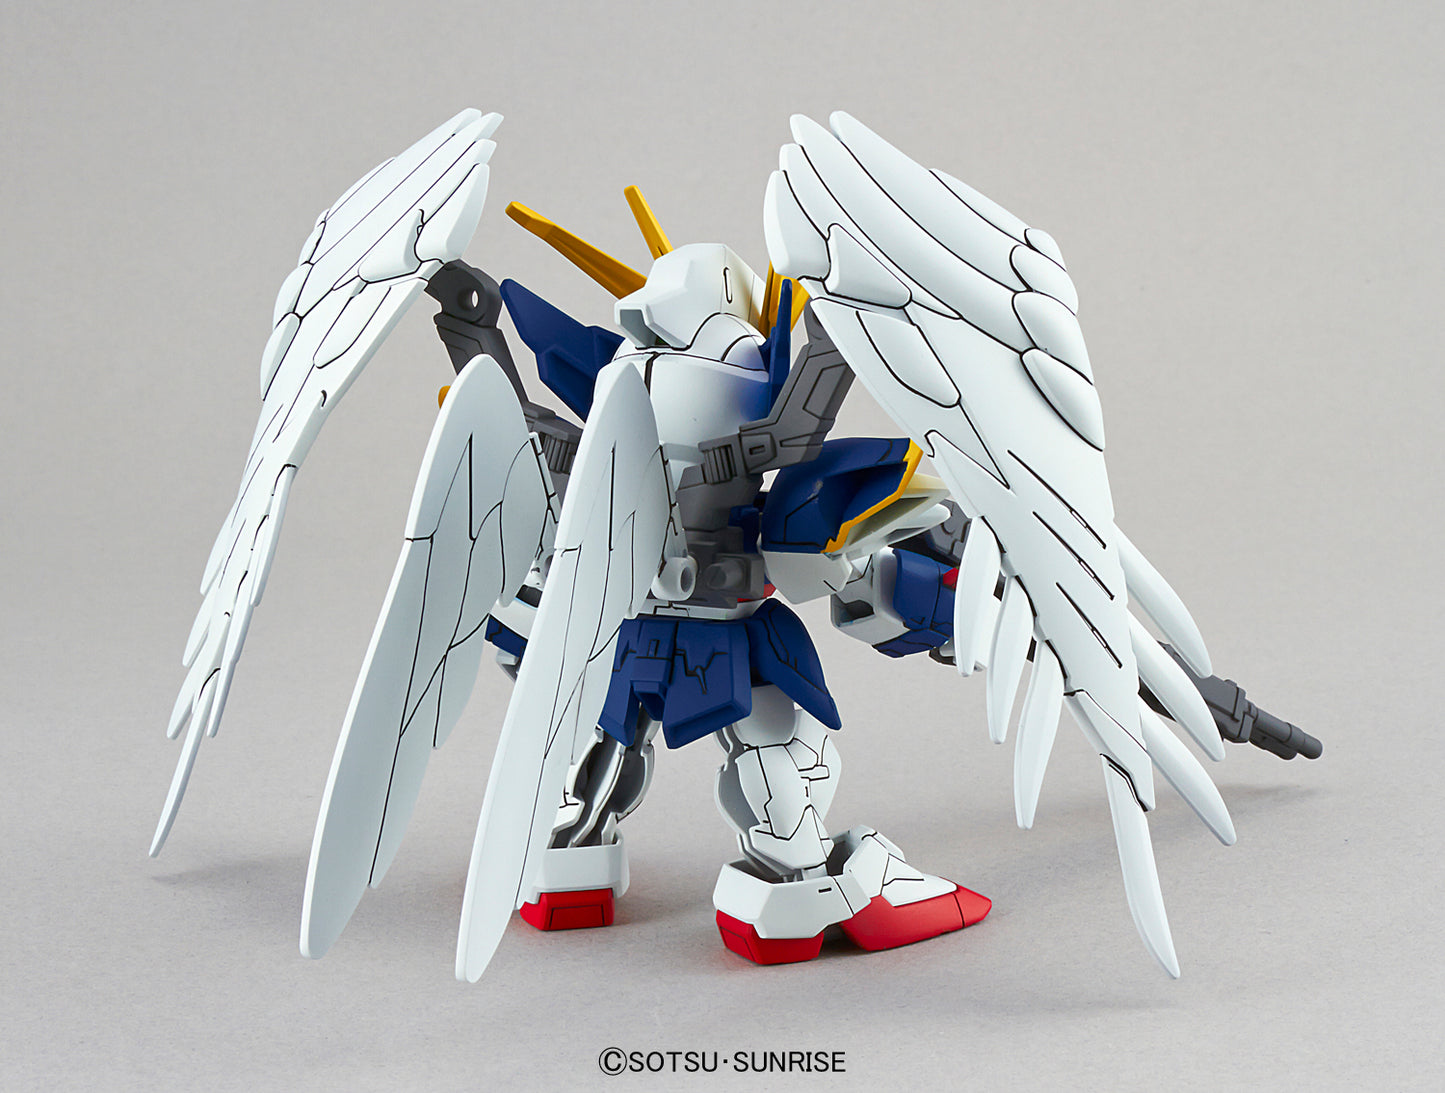 GUNDAM - SD Ex-Standard - Wing Gundam Zero Ew